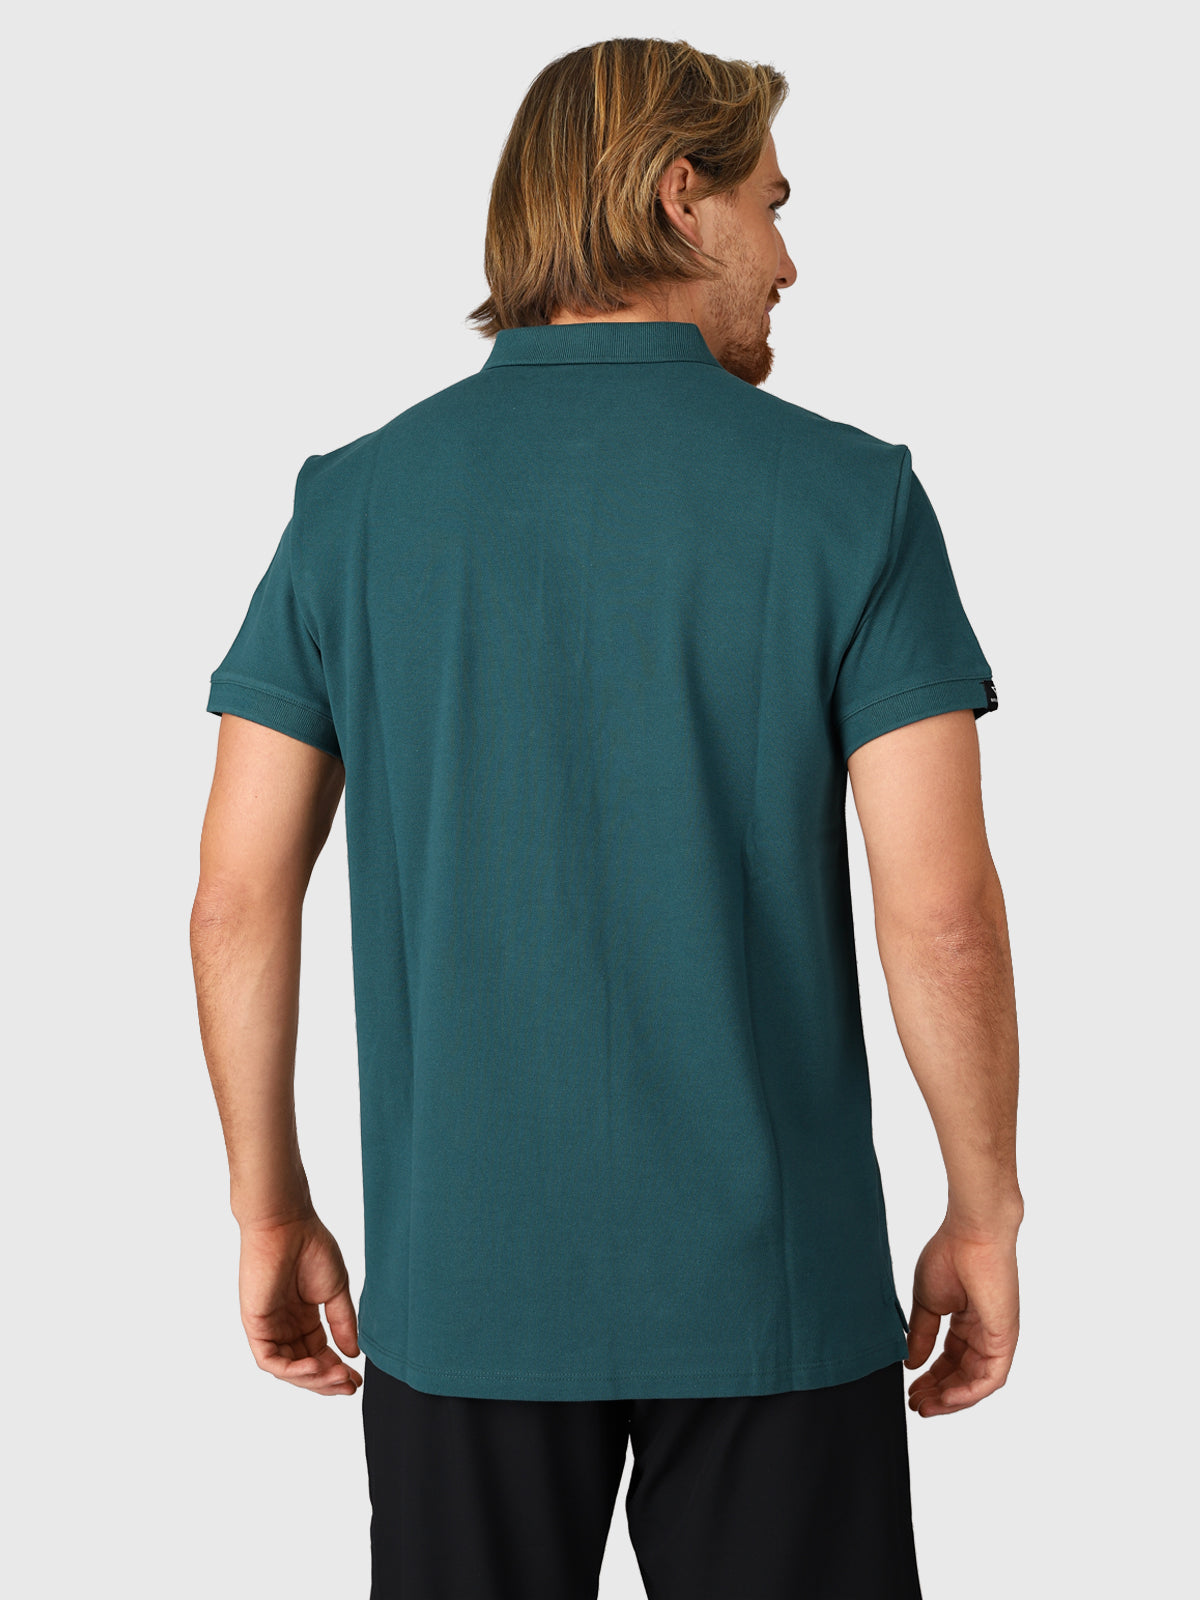 Frunot-II Herren Poloshirt | Grün